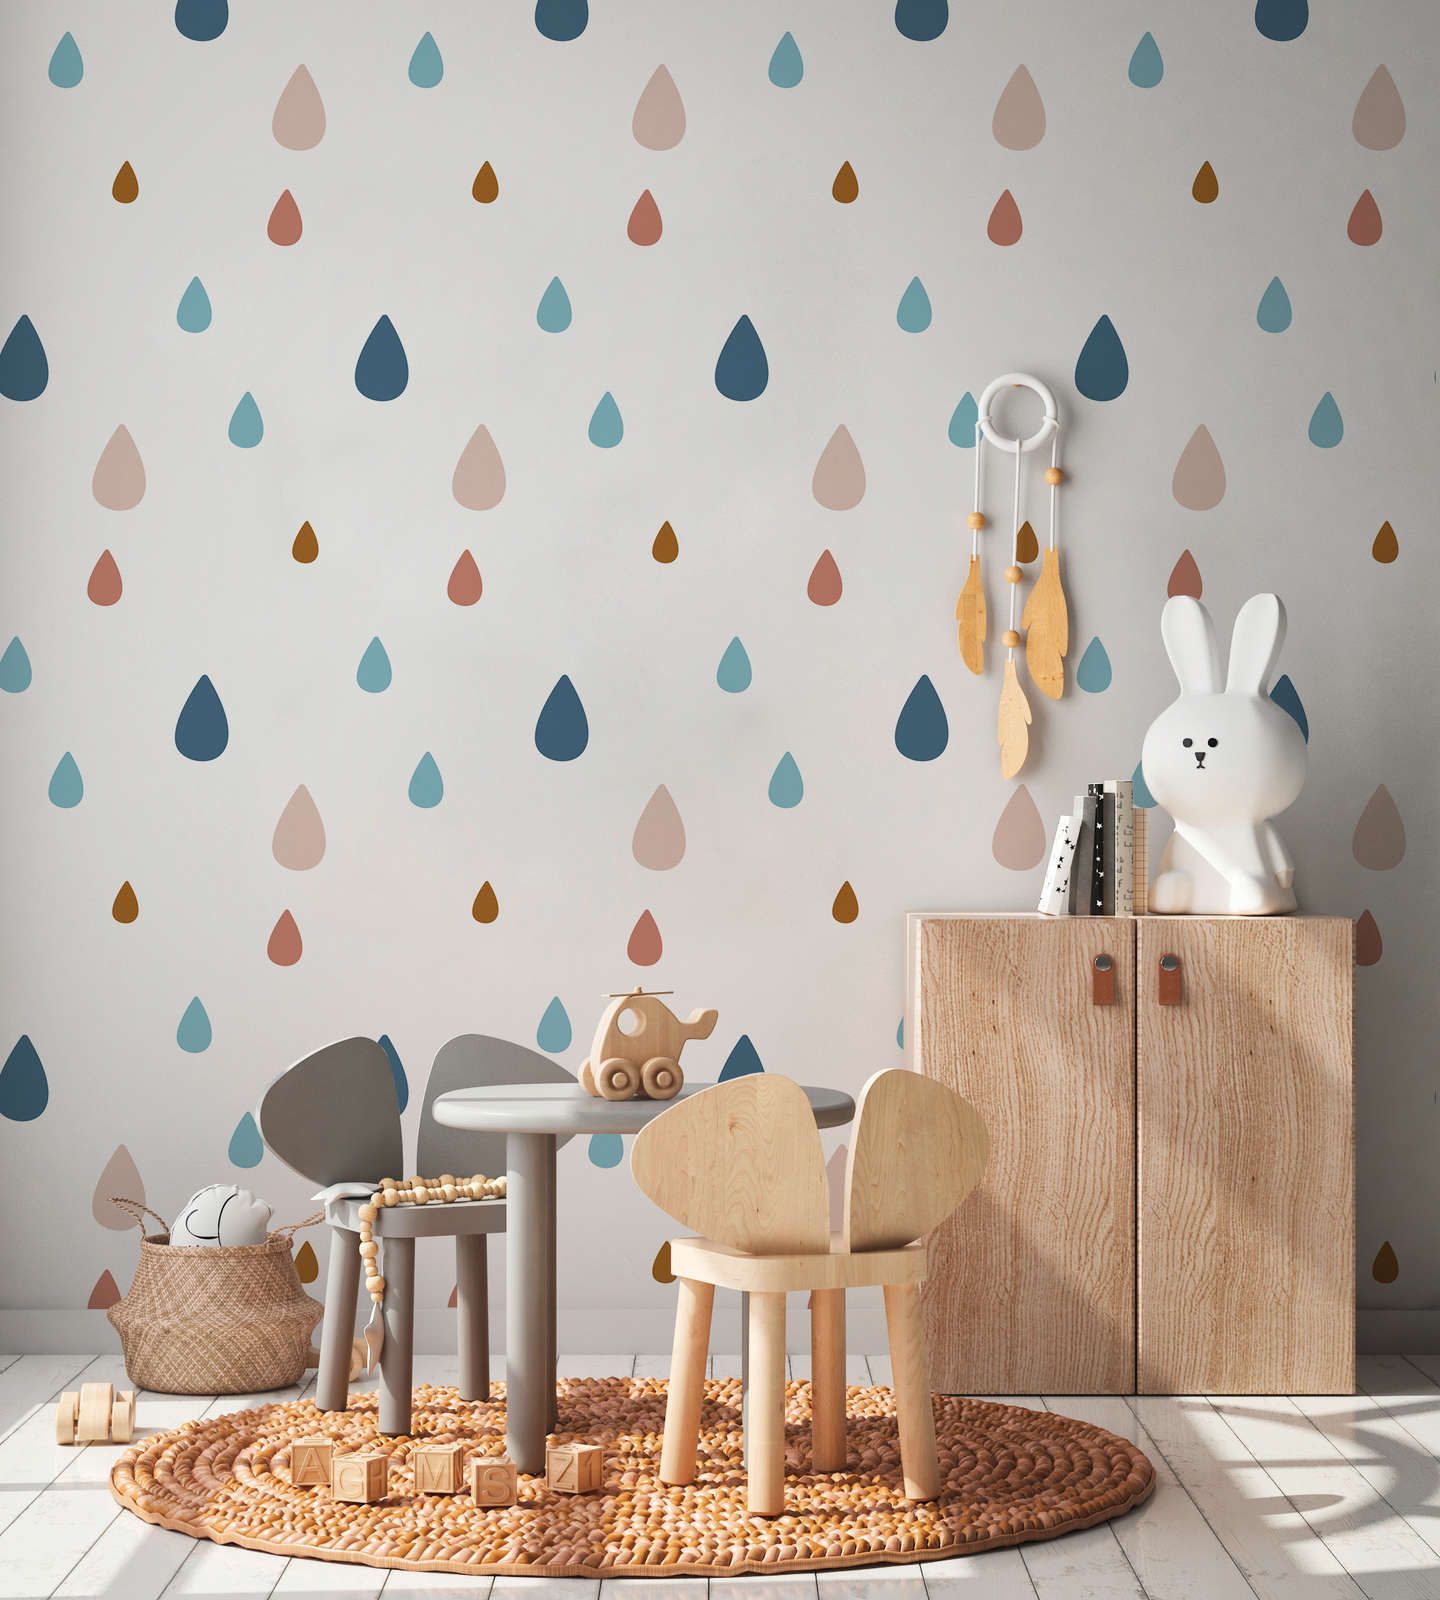             papiers peints à impression numérique pour chambre d'enfant avec gouttes d'eau colorées - intissé lisse & mat
        